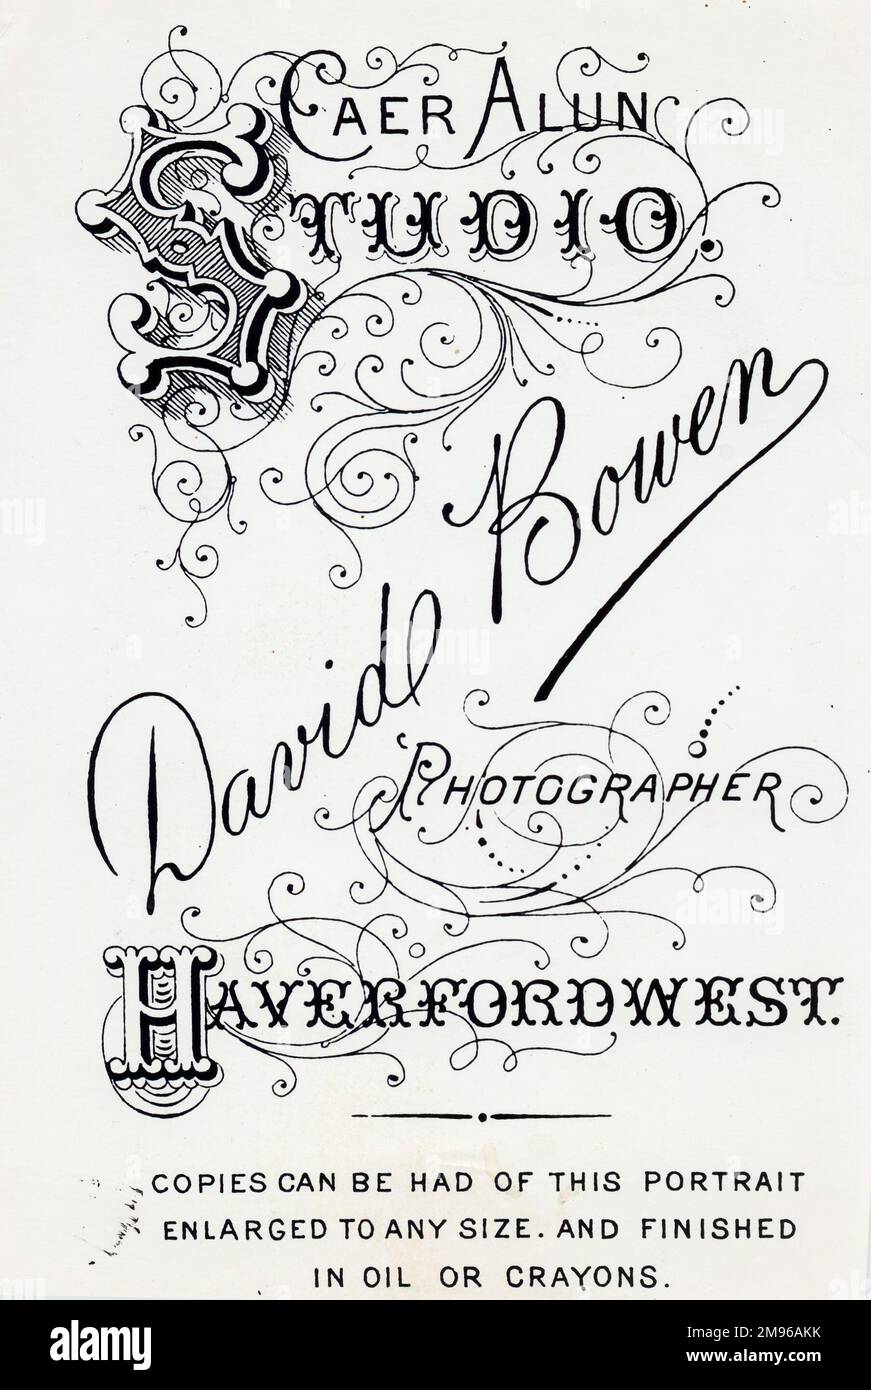 Ein typischer Fototräger, der für David Bowens Caer Alun Studio in Haverfordwest, Pembrokeshire, Dyfed, Südwales wirbt. Stockfoto